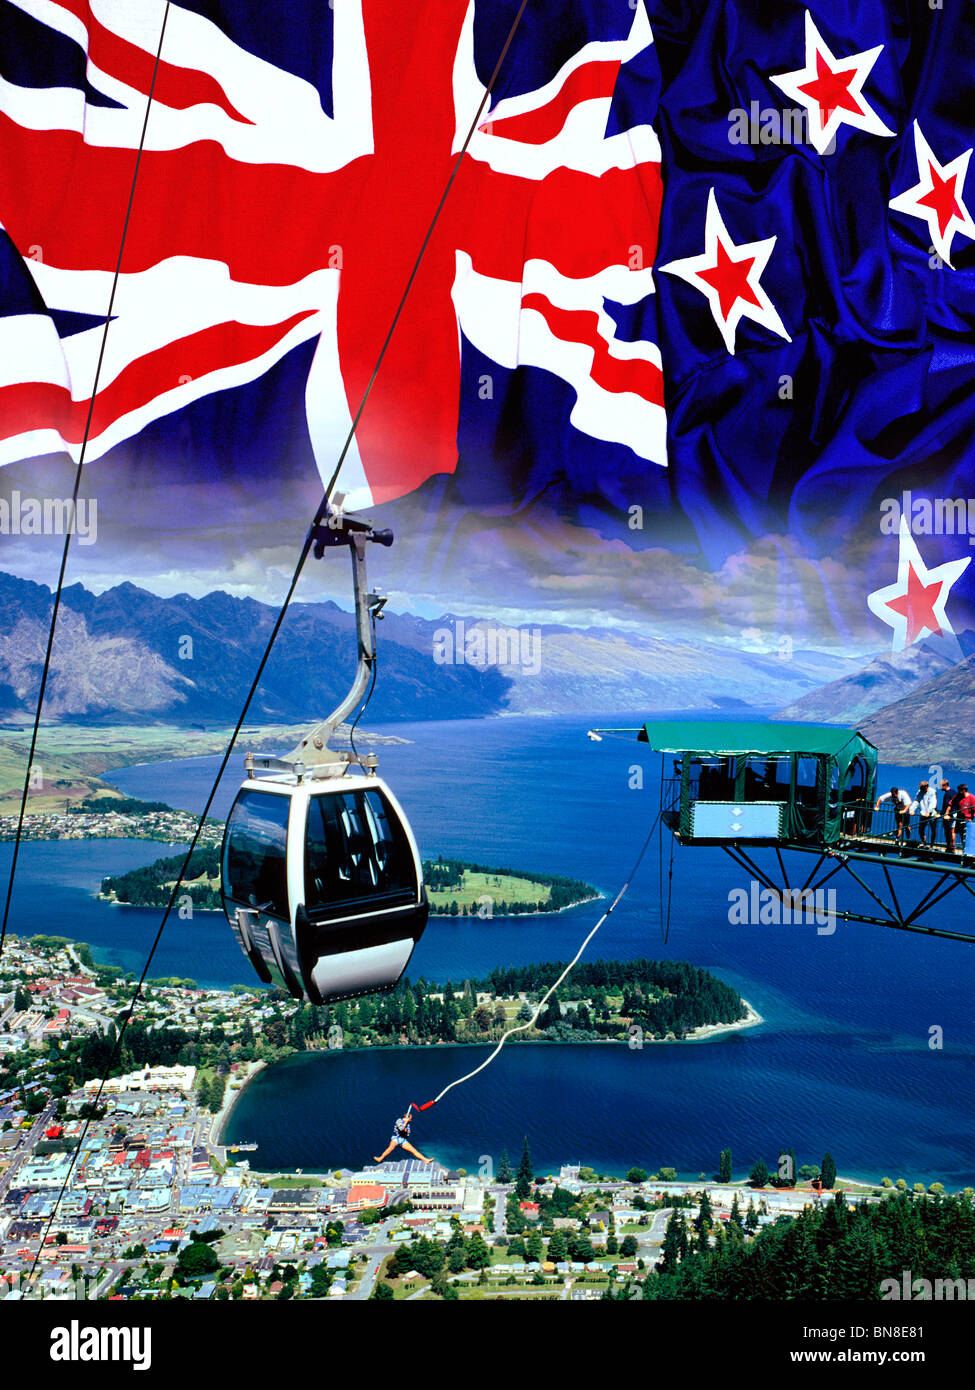 Drapeau de la Nouvelle-Zélande et de la ville de Queenstown - Accueil de bungee jumping Banque D'Images